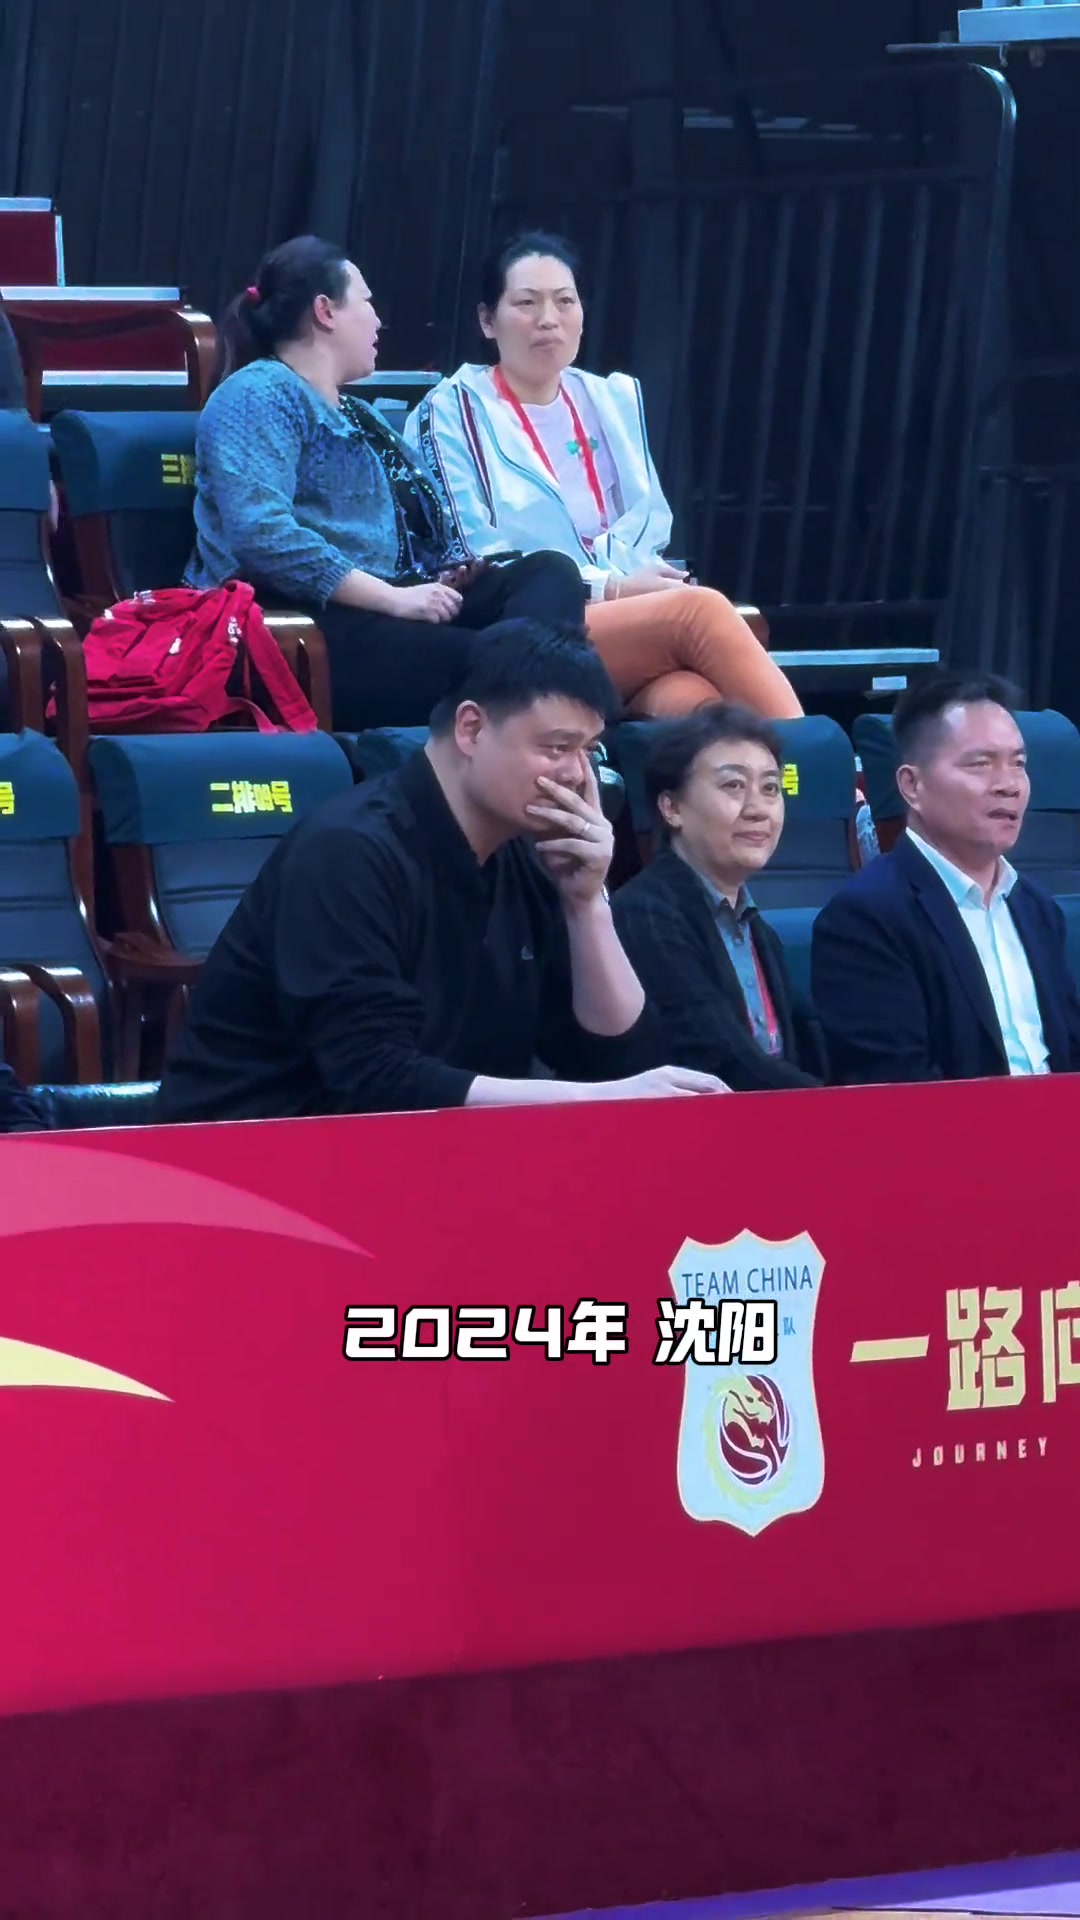 姚明和劳伦杰克逊北京奥运后16年再度同框